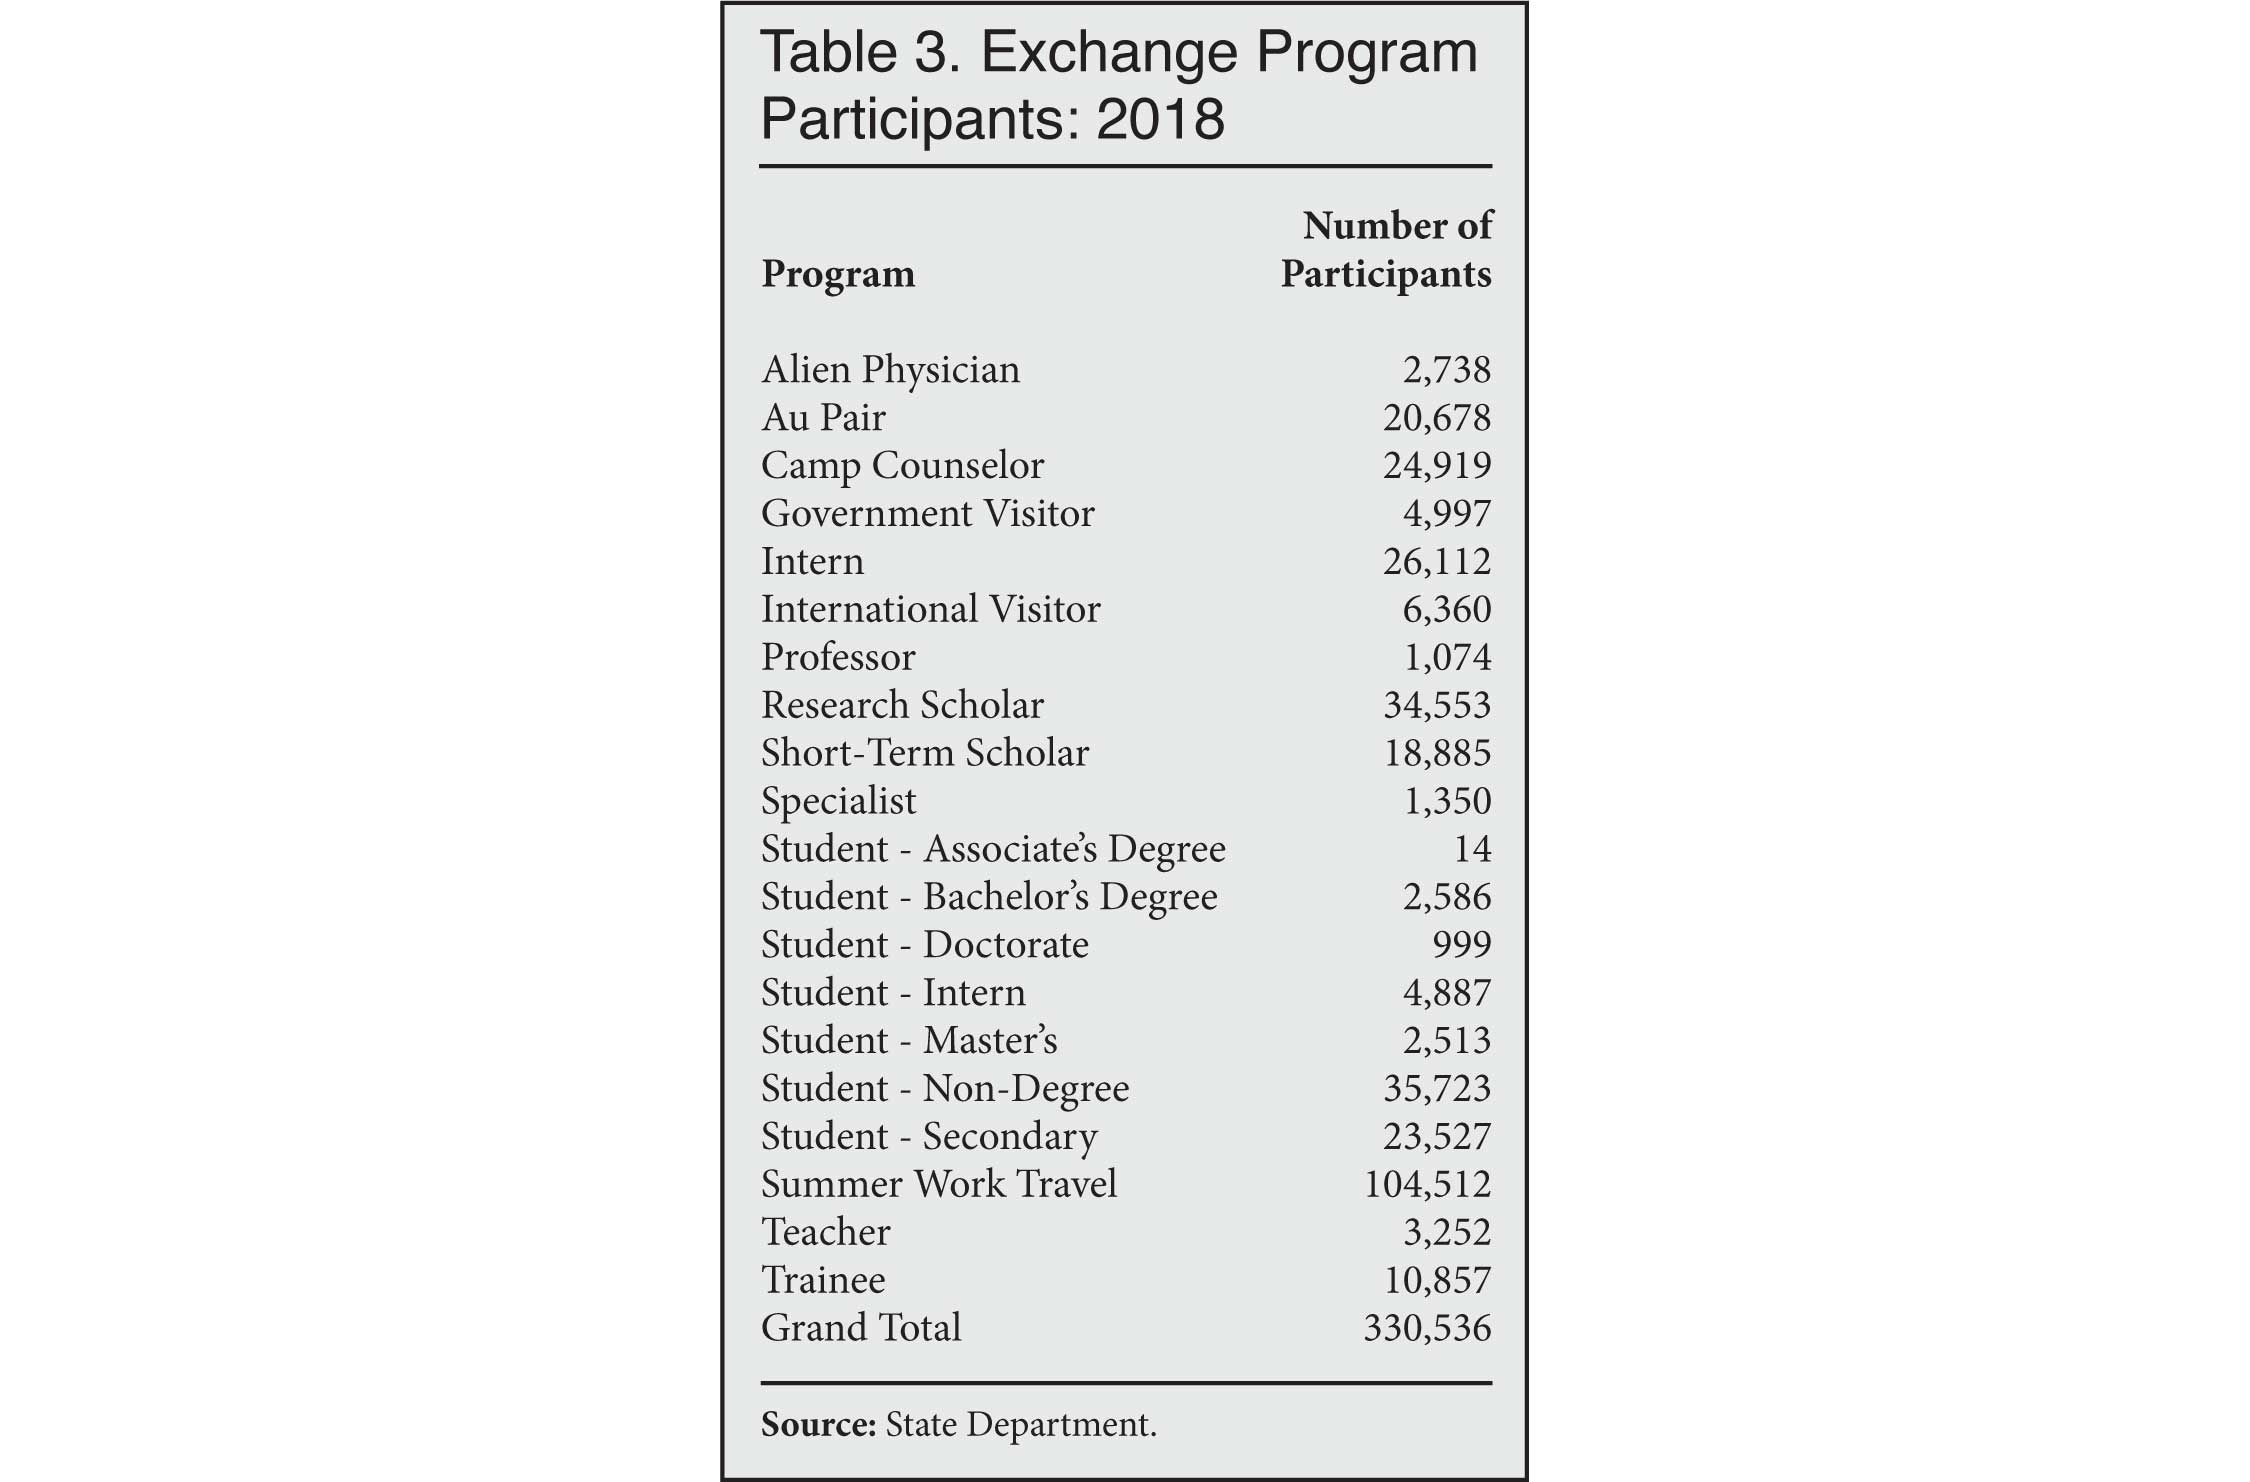 Table: Exchange Program Participants, 2018